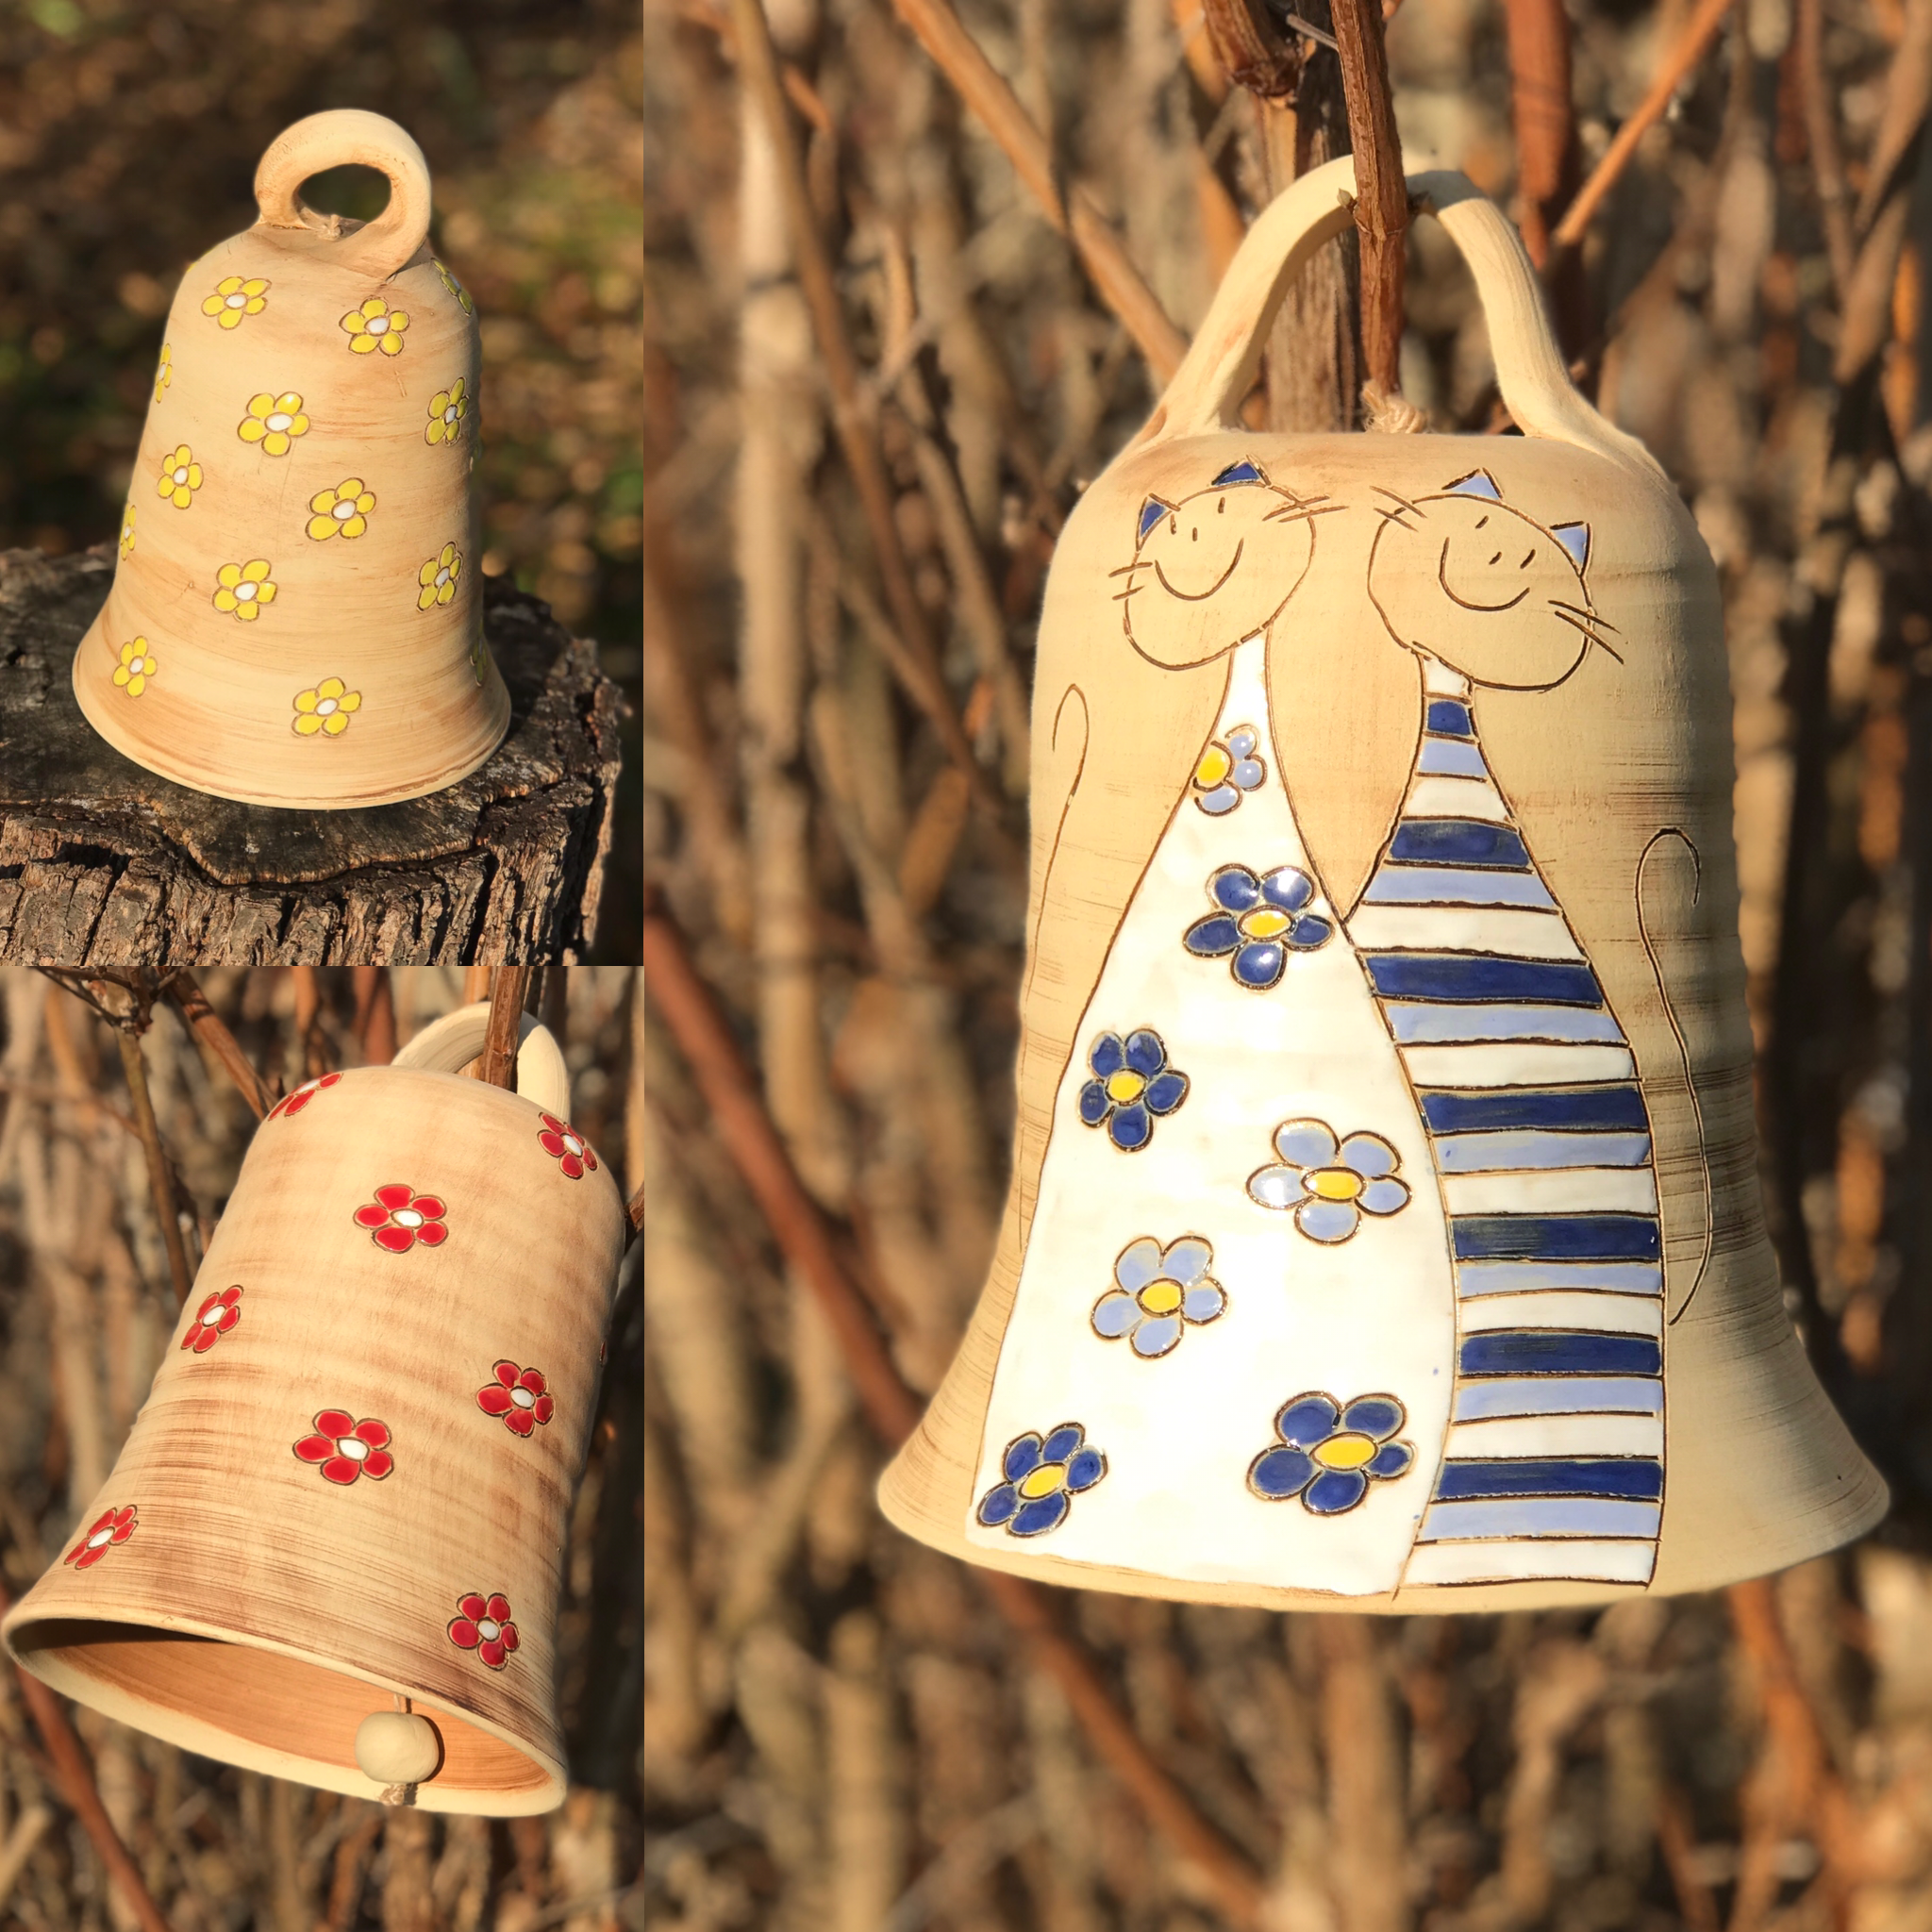 kouzelné zvonky a zvony